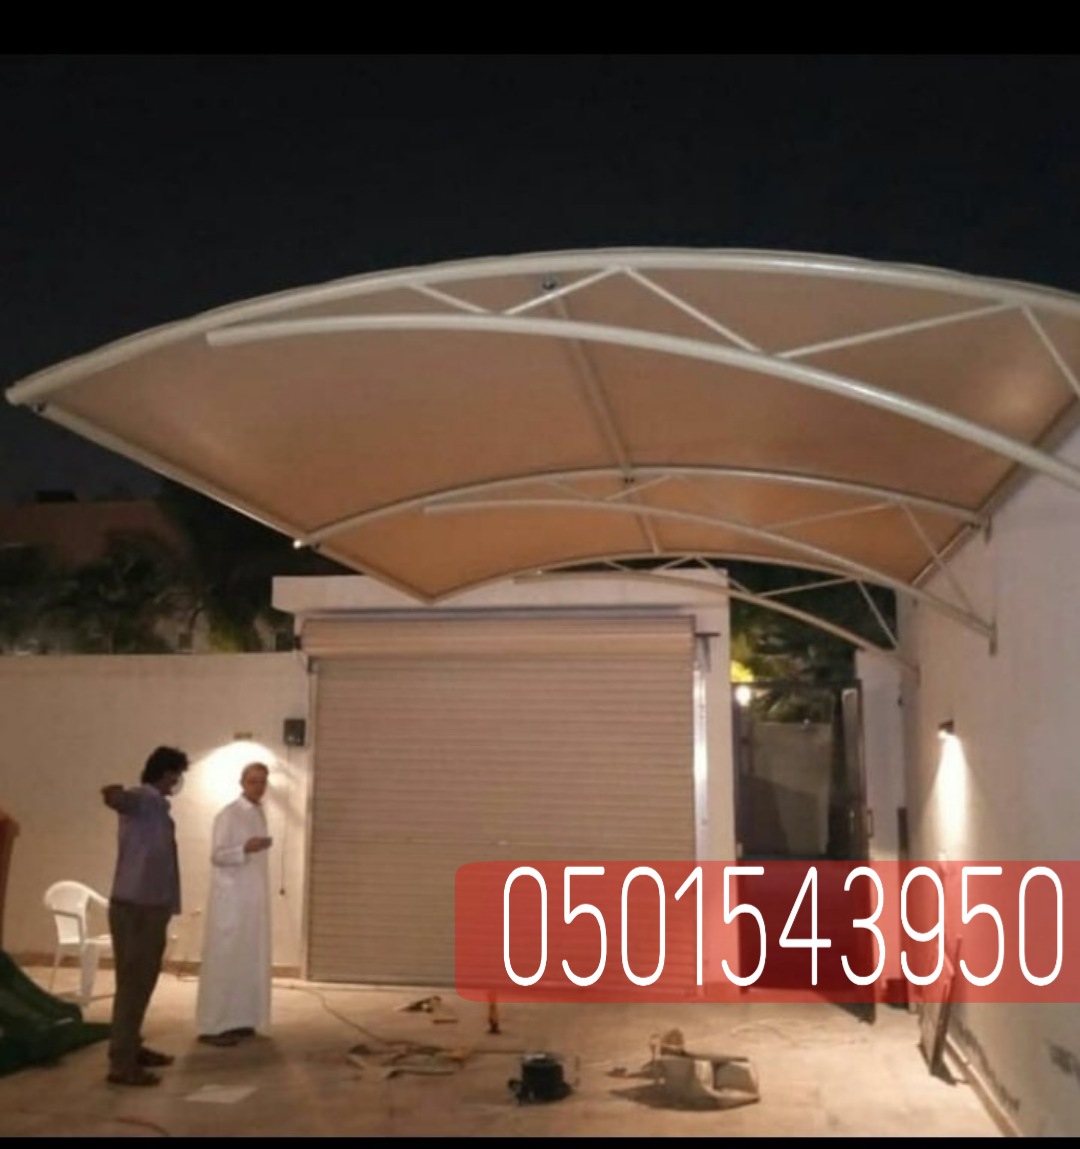 انواع مظلات السيارات في الرياض , 0501543950 P_23608o2mq3